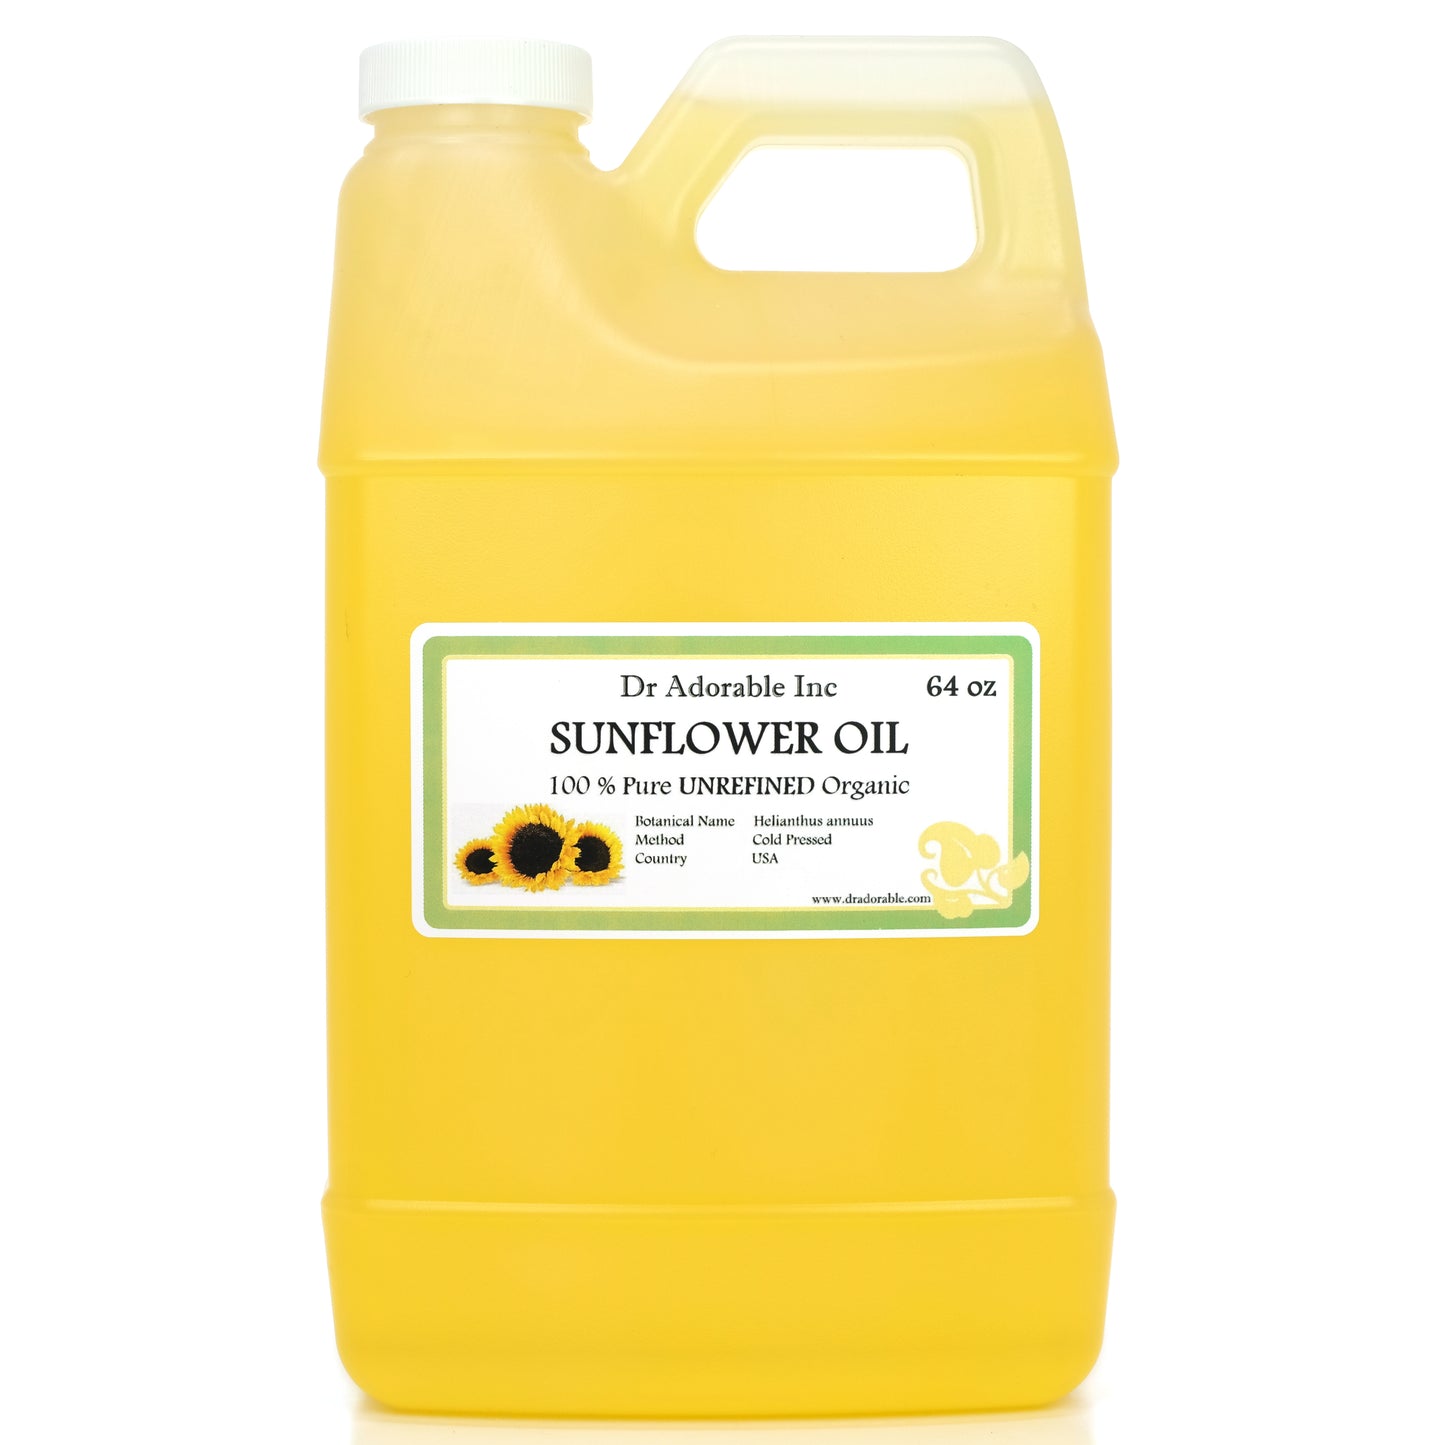 Sunflower Oil Unrefined - 100% Pure Natural Premium Organic Cold Pressed